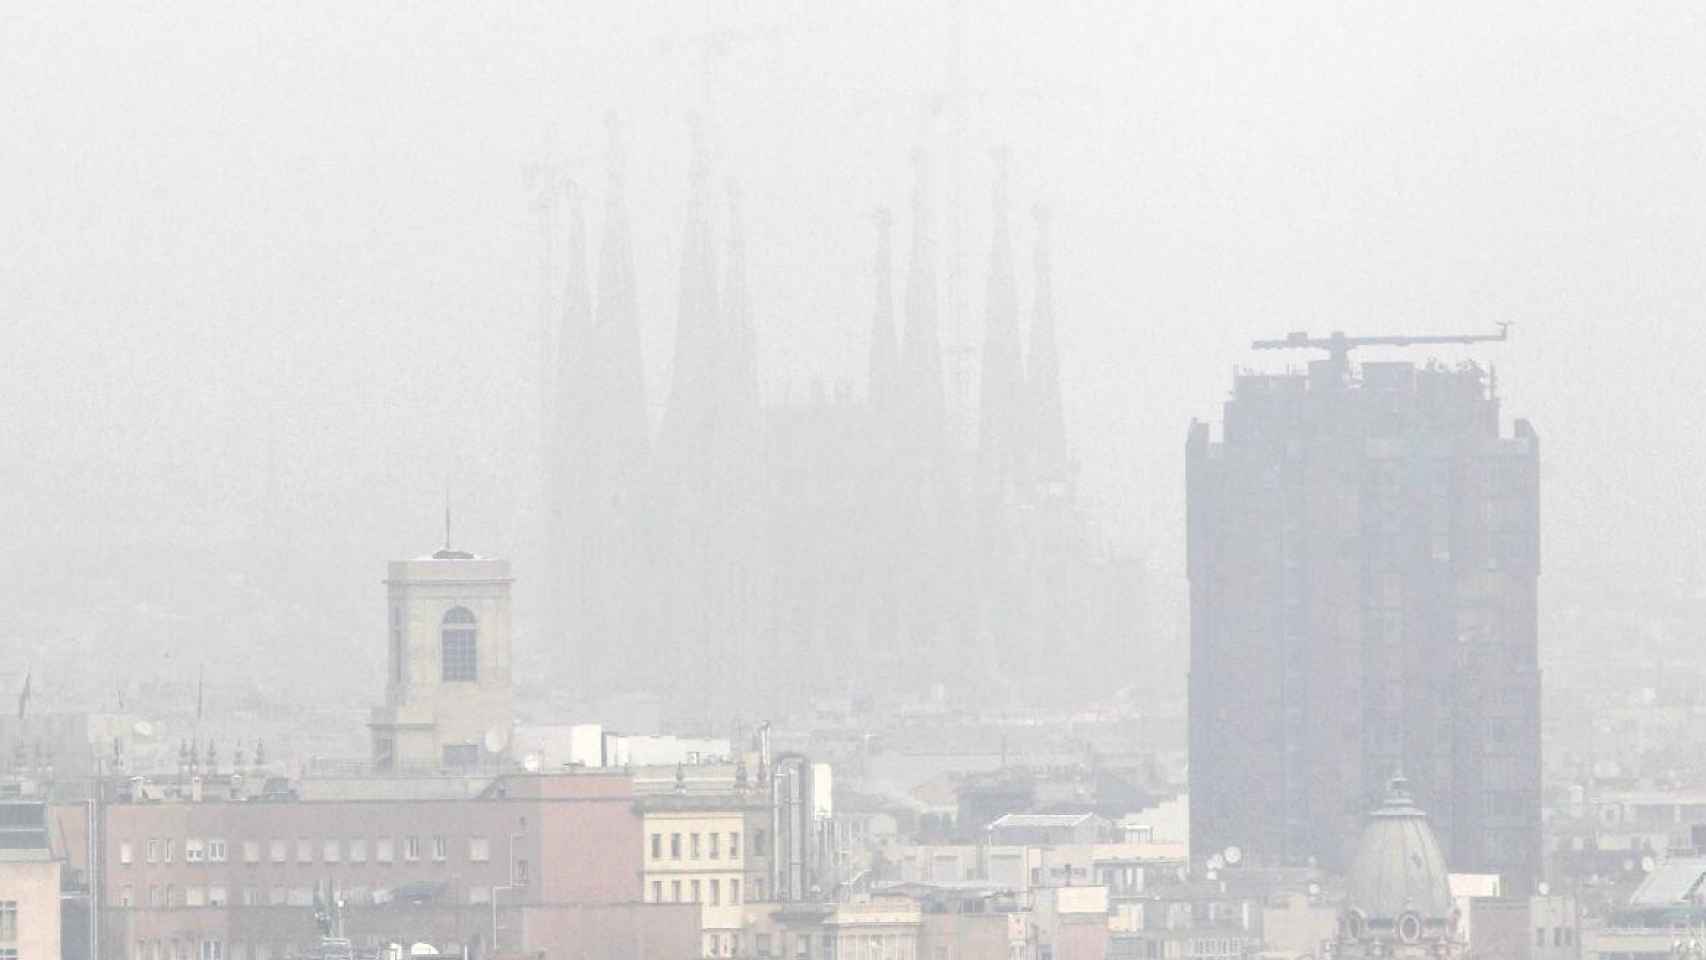 La contaminación de Barcelona no deja ver la Sagrada Familia / EFE